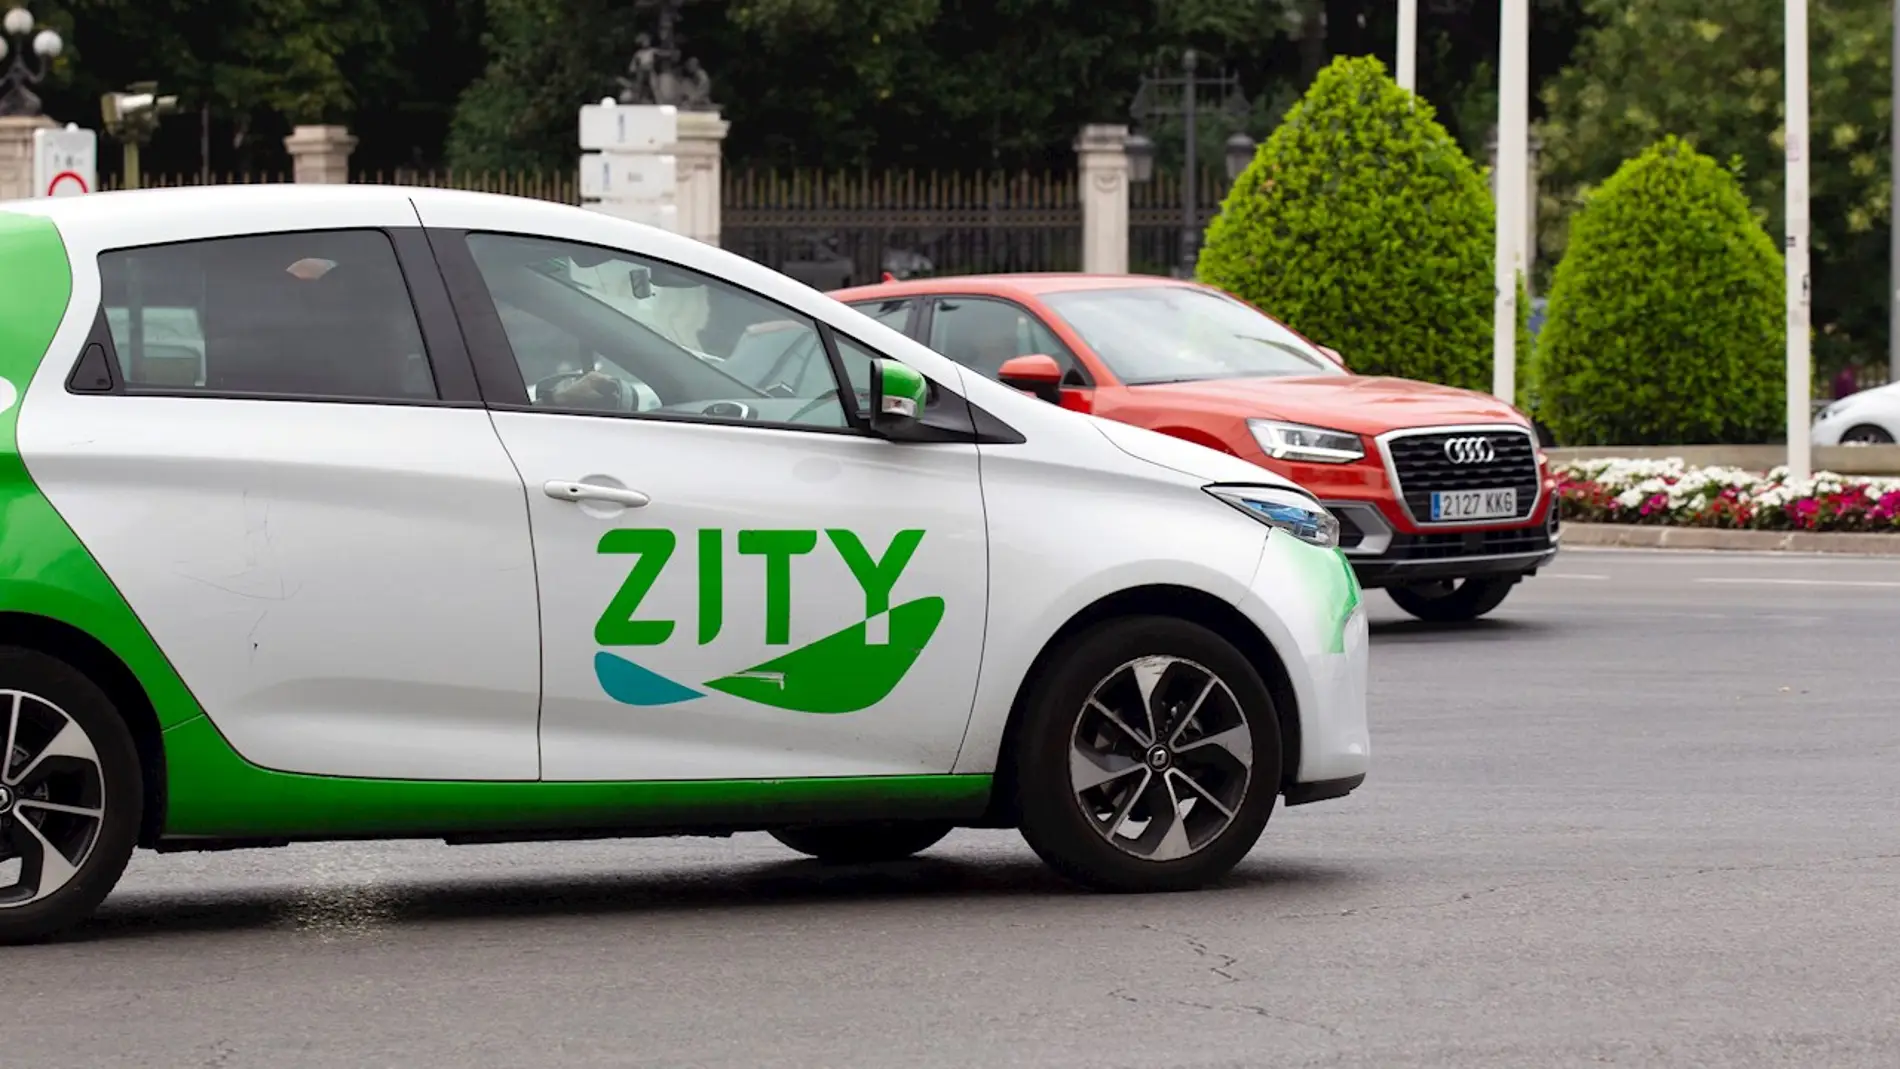 Coche de alquiler de la empresa Zity circulando por Madrid